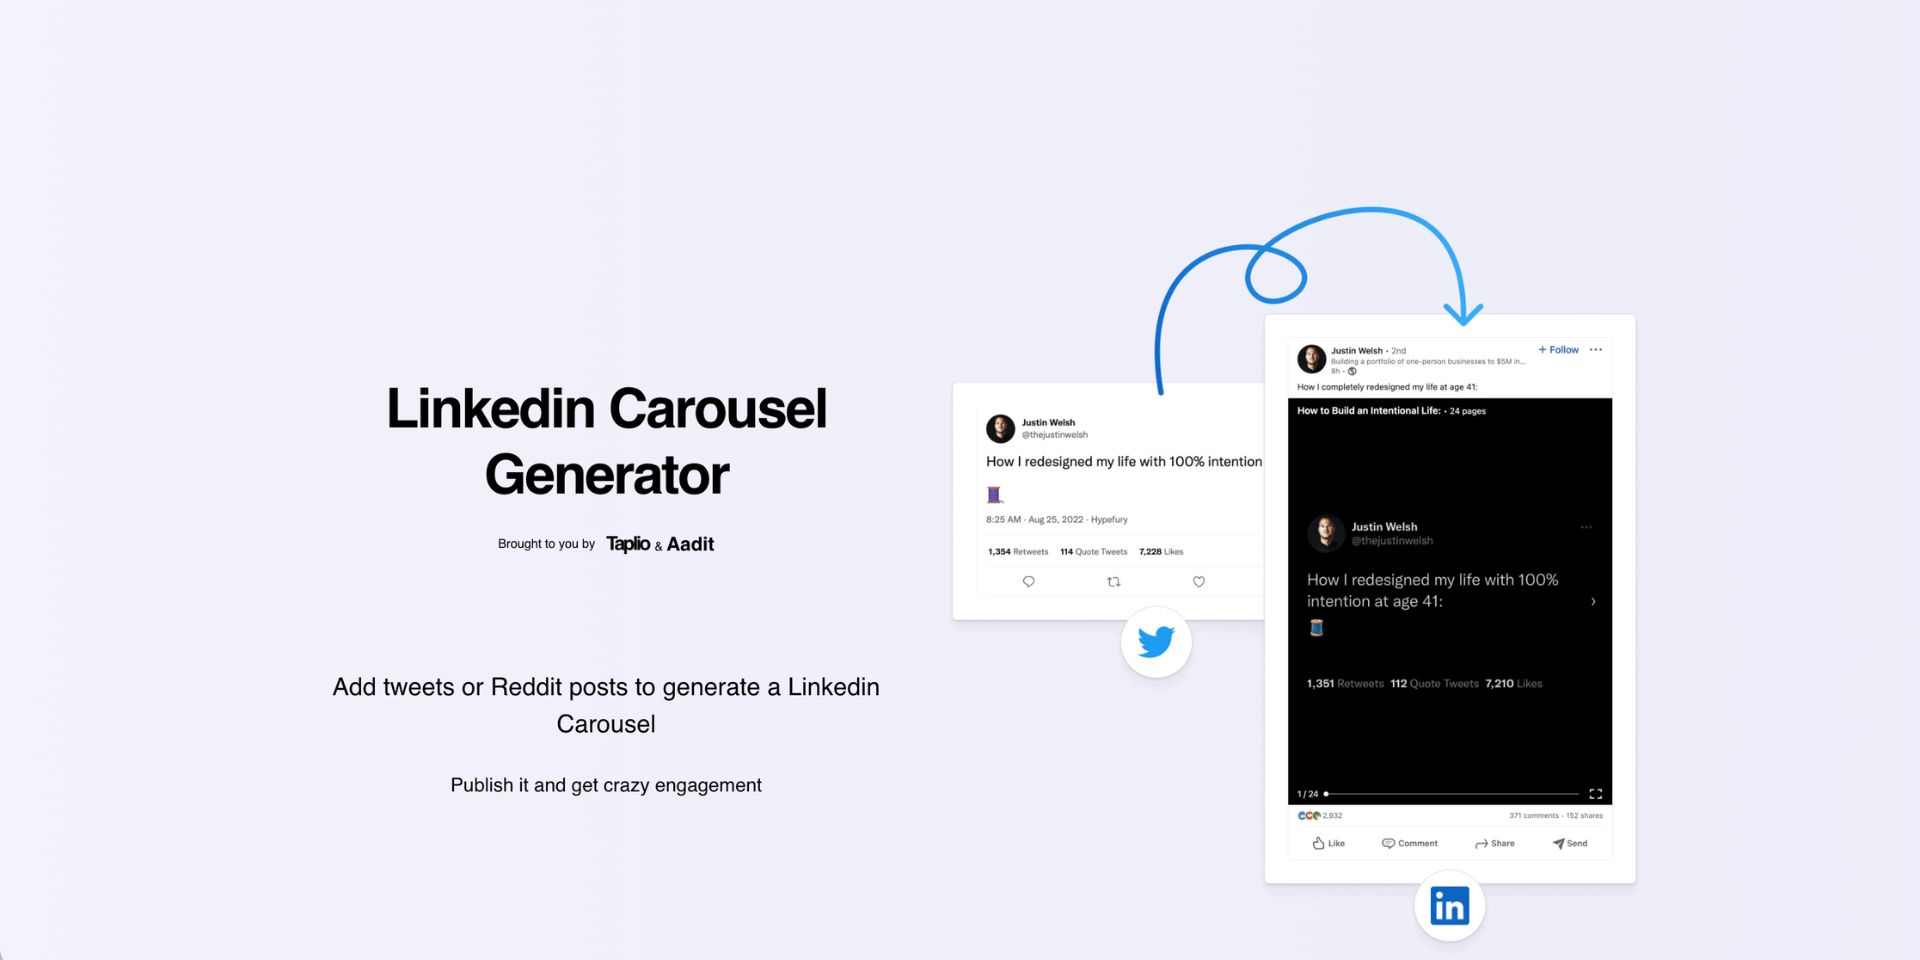 LinkedIn Carousel Generator